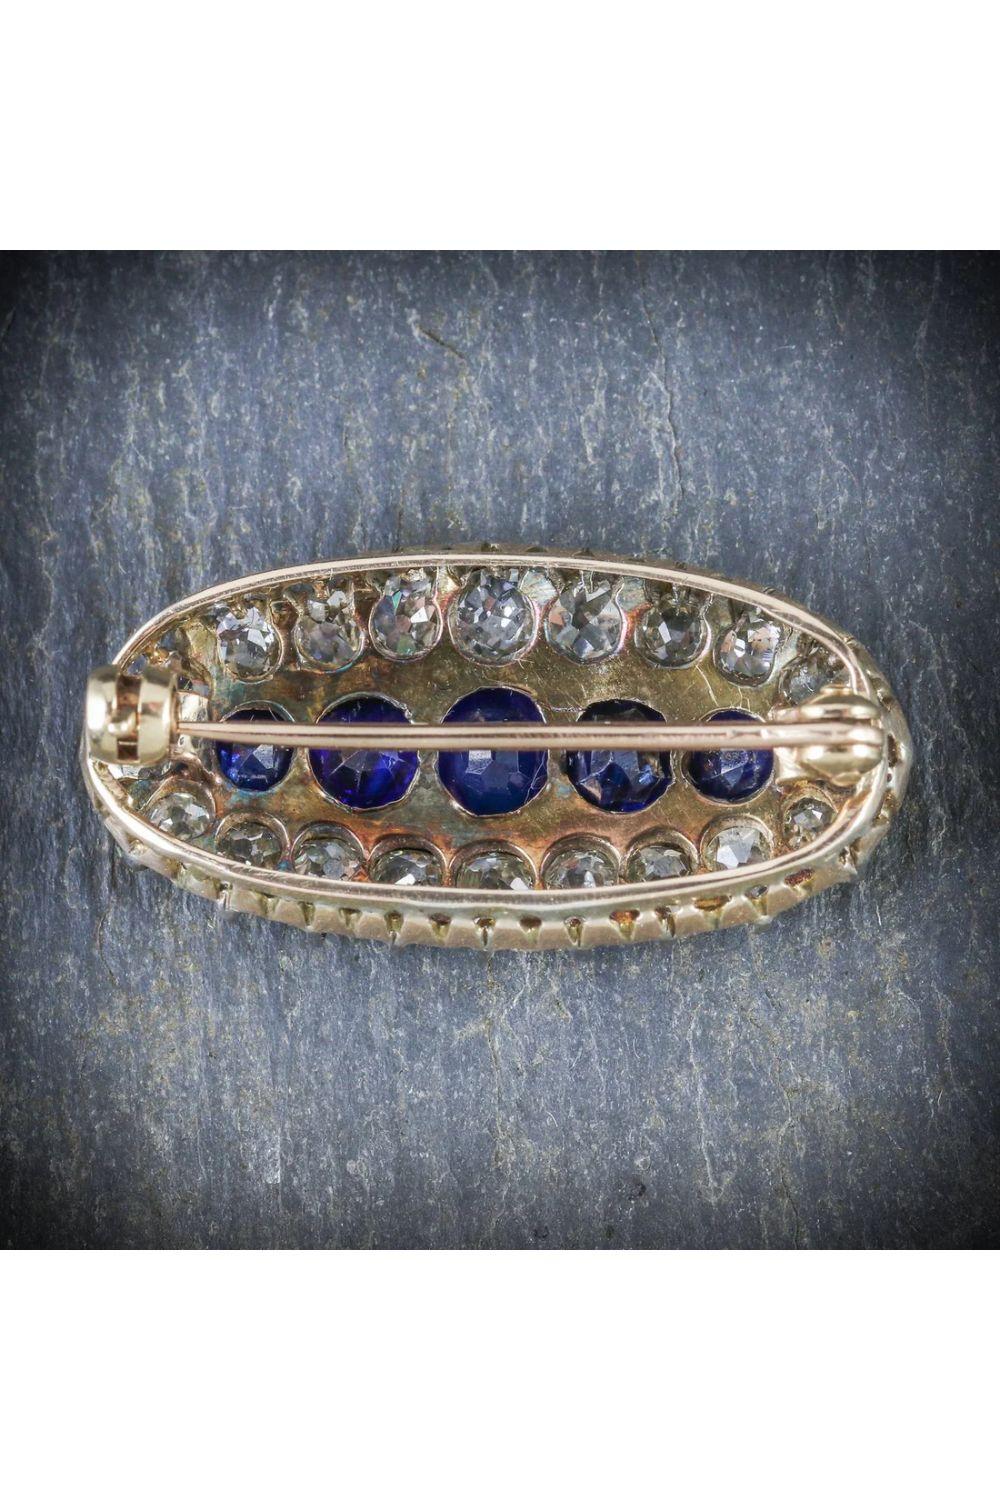 Eine atemberaubende antike viktorianische Brosche mit fünf tiefblauen Saphiren in der Mitte, umrahmt von einem Rahmen aus zwanzig funkelnden Diamanten im Minenschliff. Die Saphire haben eine Größe von 0,20 bis 0,50 ct (insgesamt ca. 1,5 ct) und die